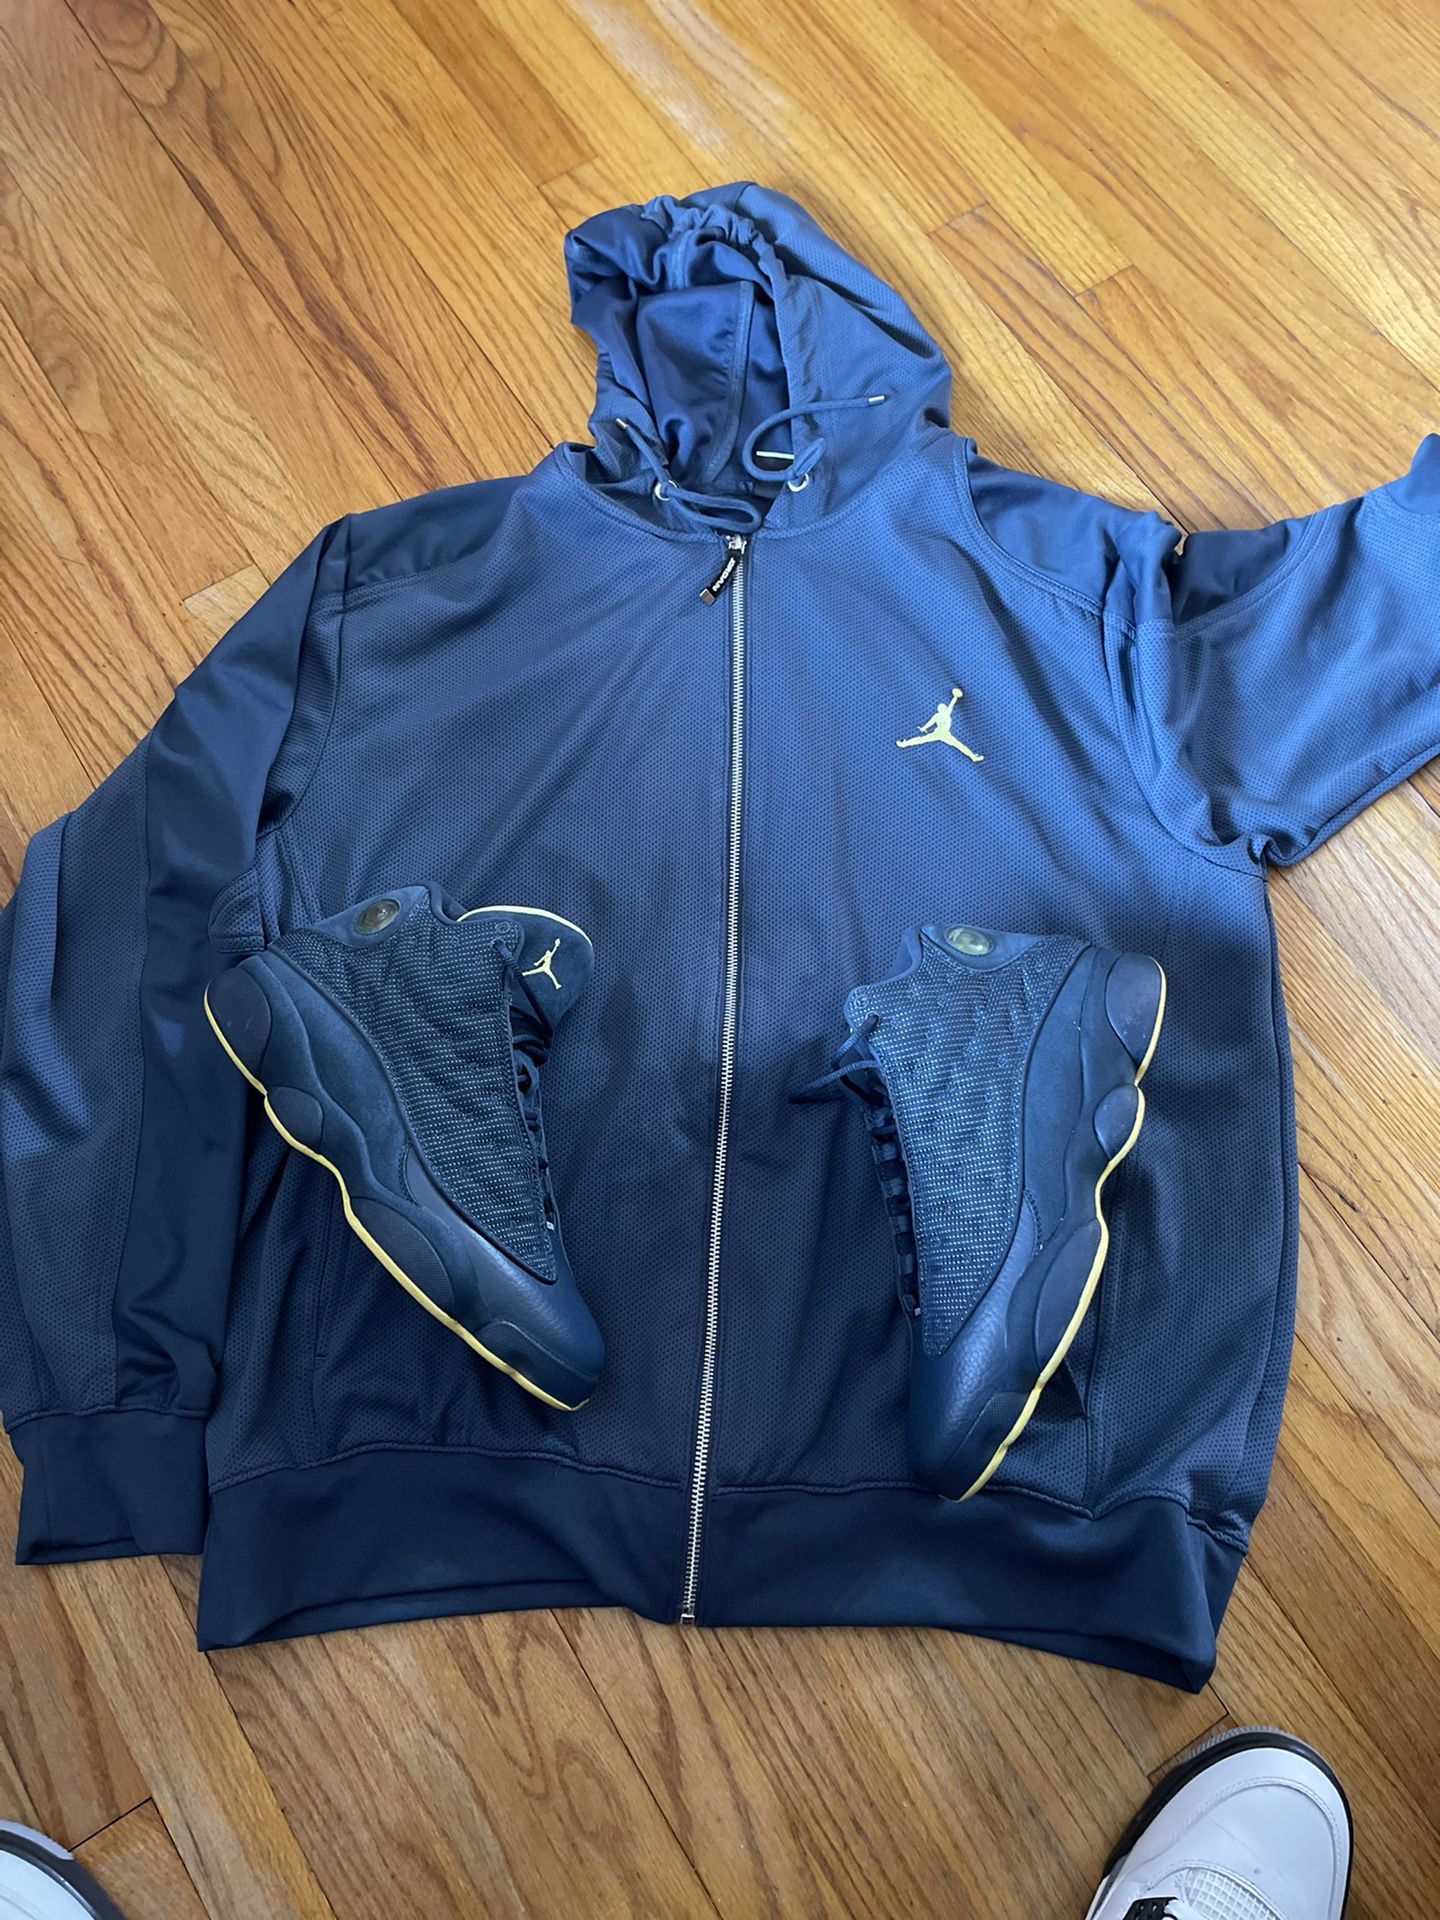 Nike Air Jordan Retro 13 And Hoodie 